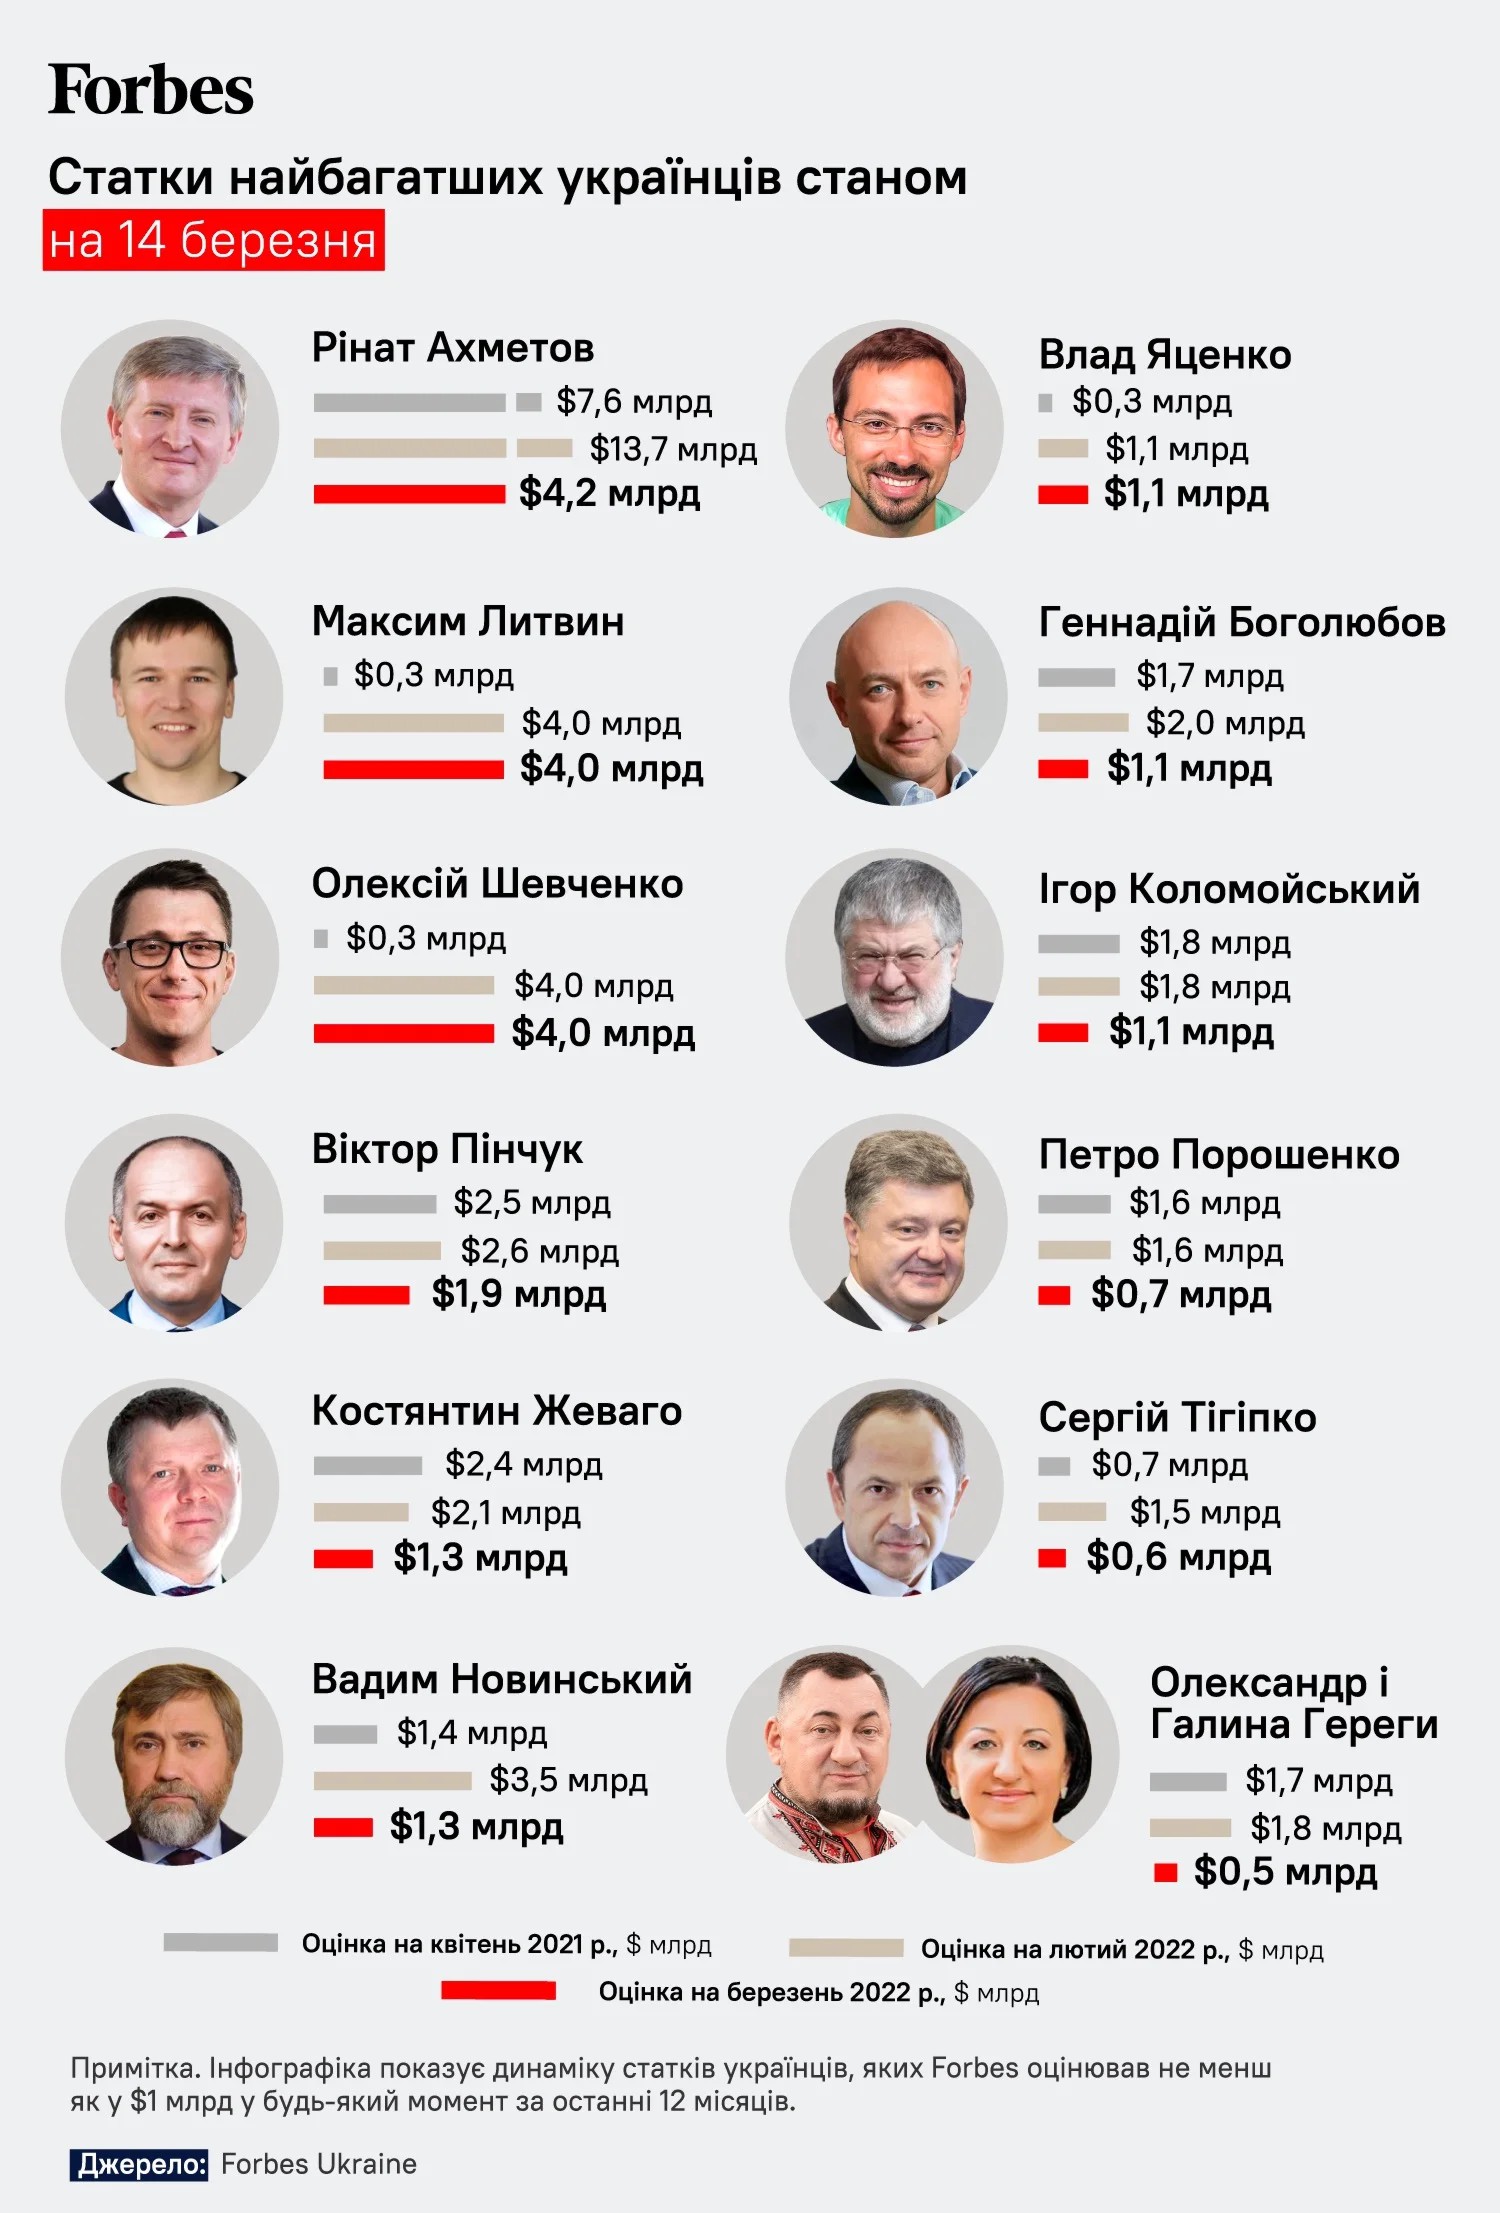 Рейтинг Forbes 2022: самые богатые украинцы теряют позиции из-за войны